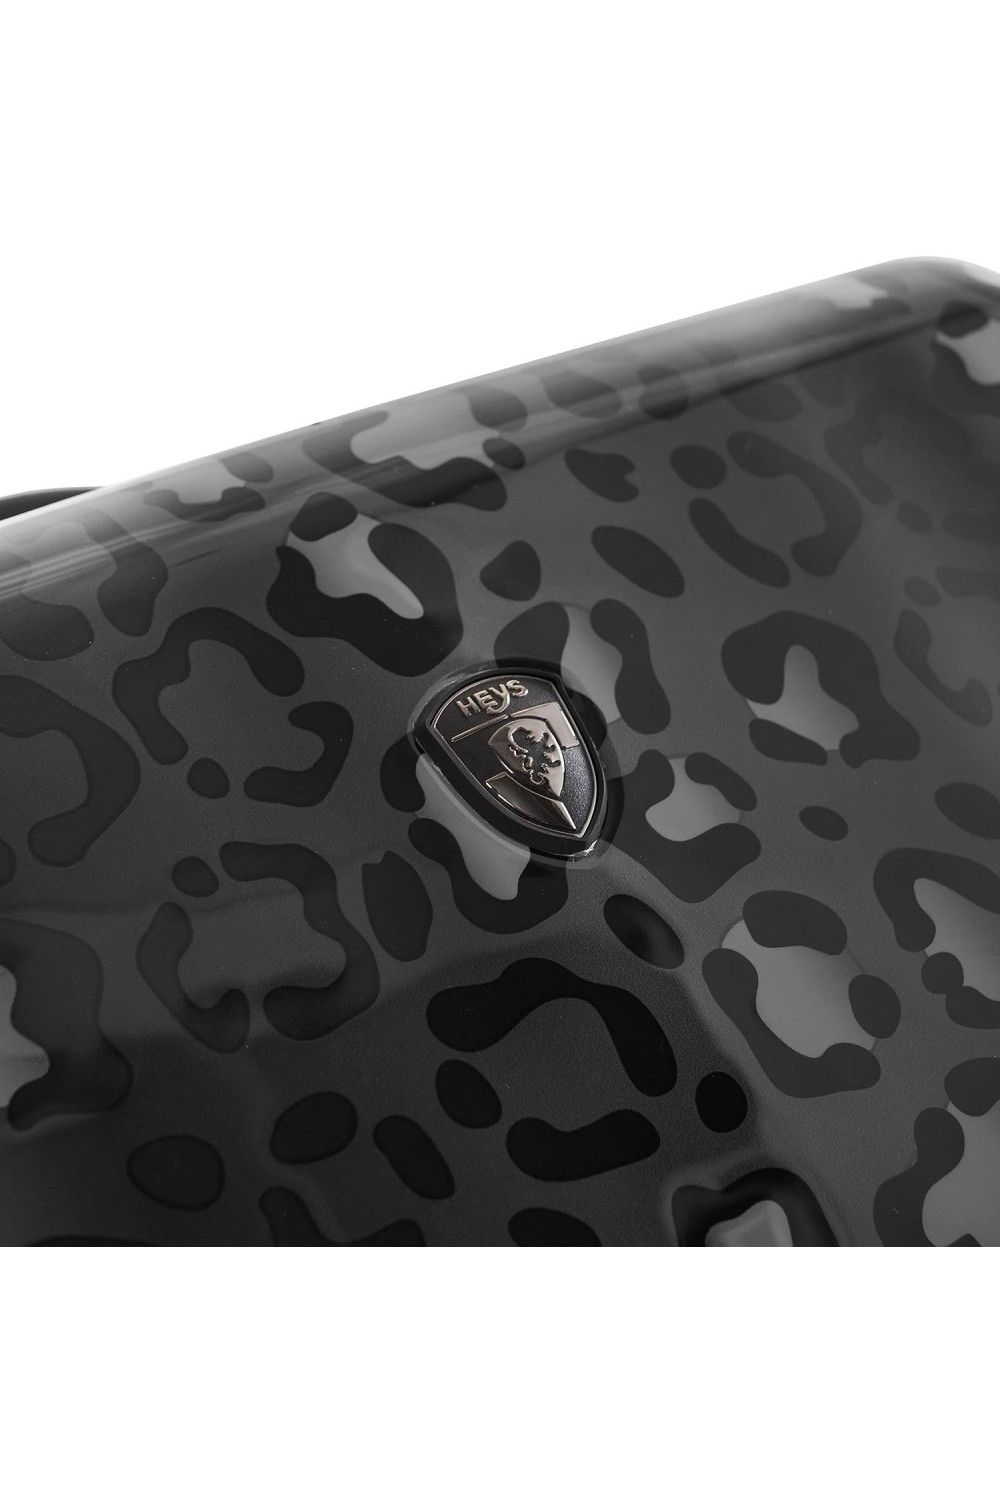 Koffer Handgepäck Heys Black Leopard 4 Rad 55cm erweiterbar